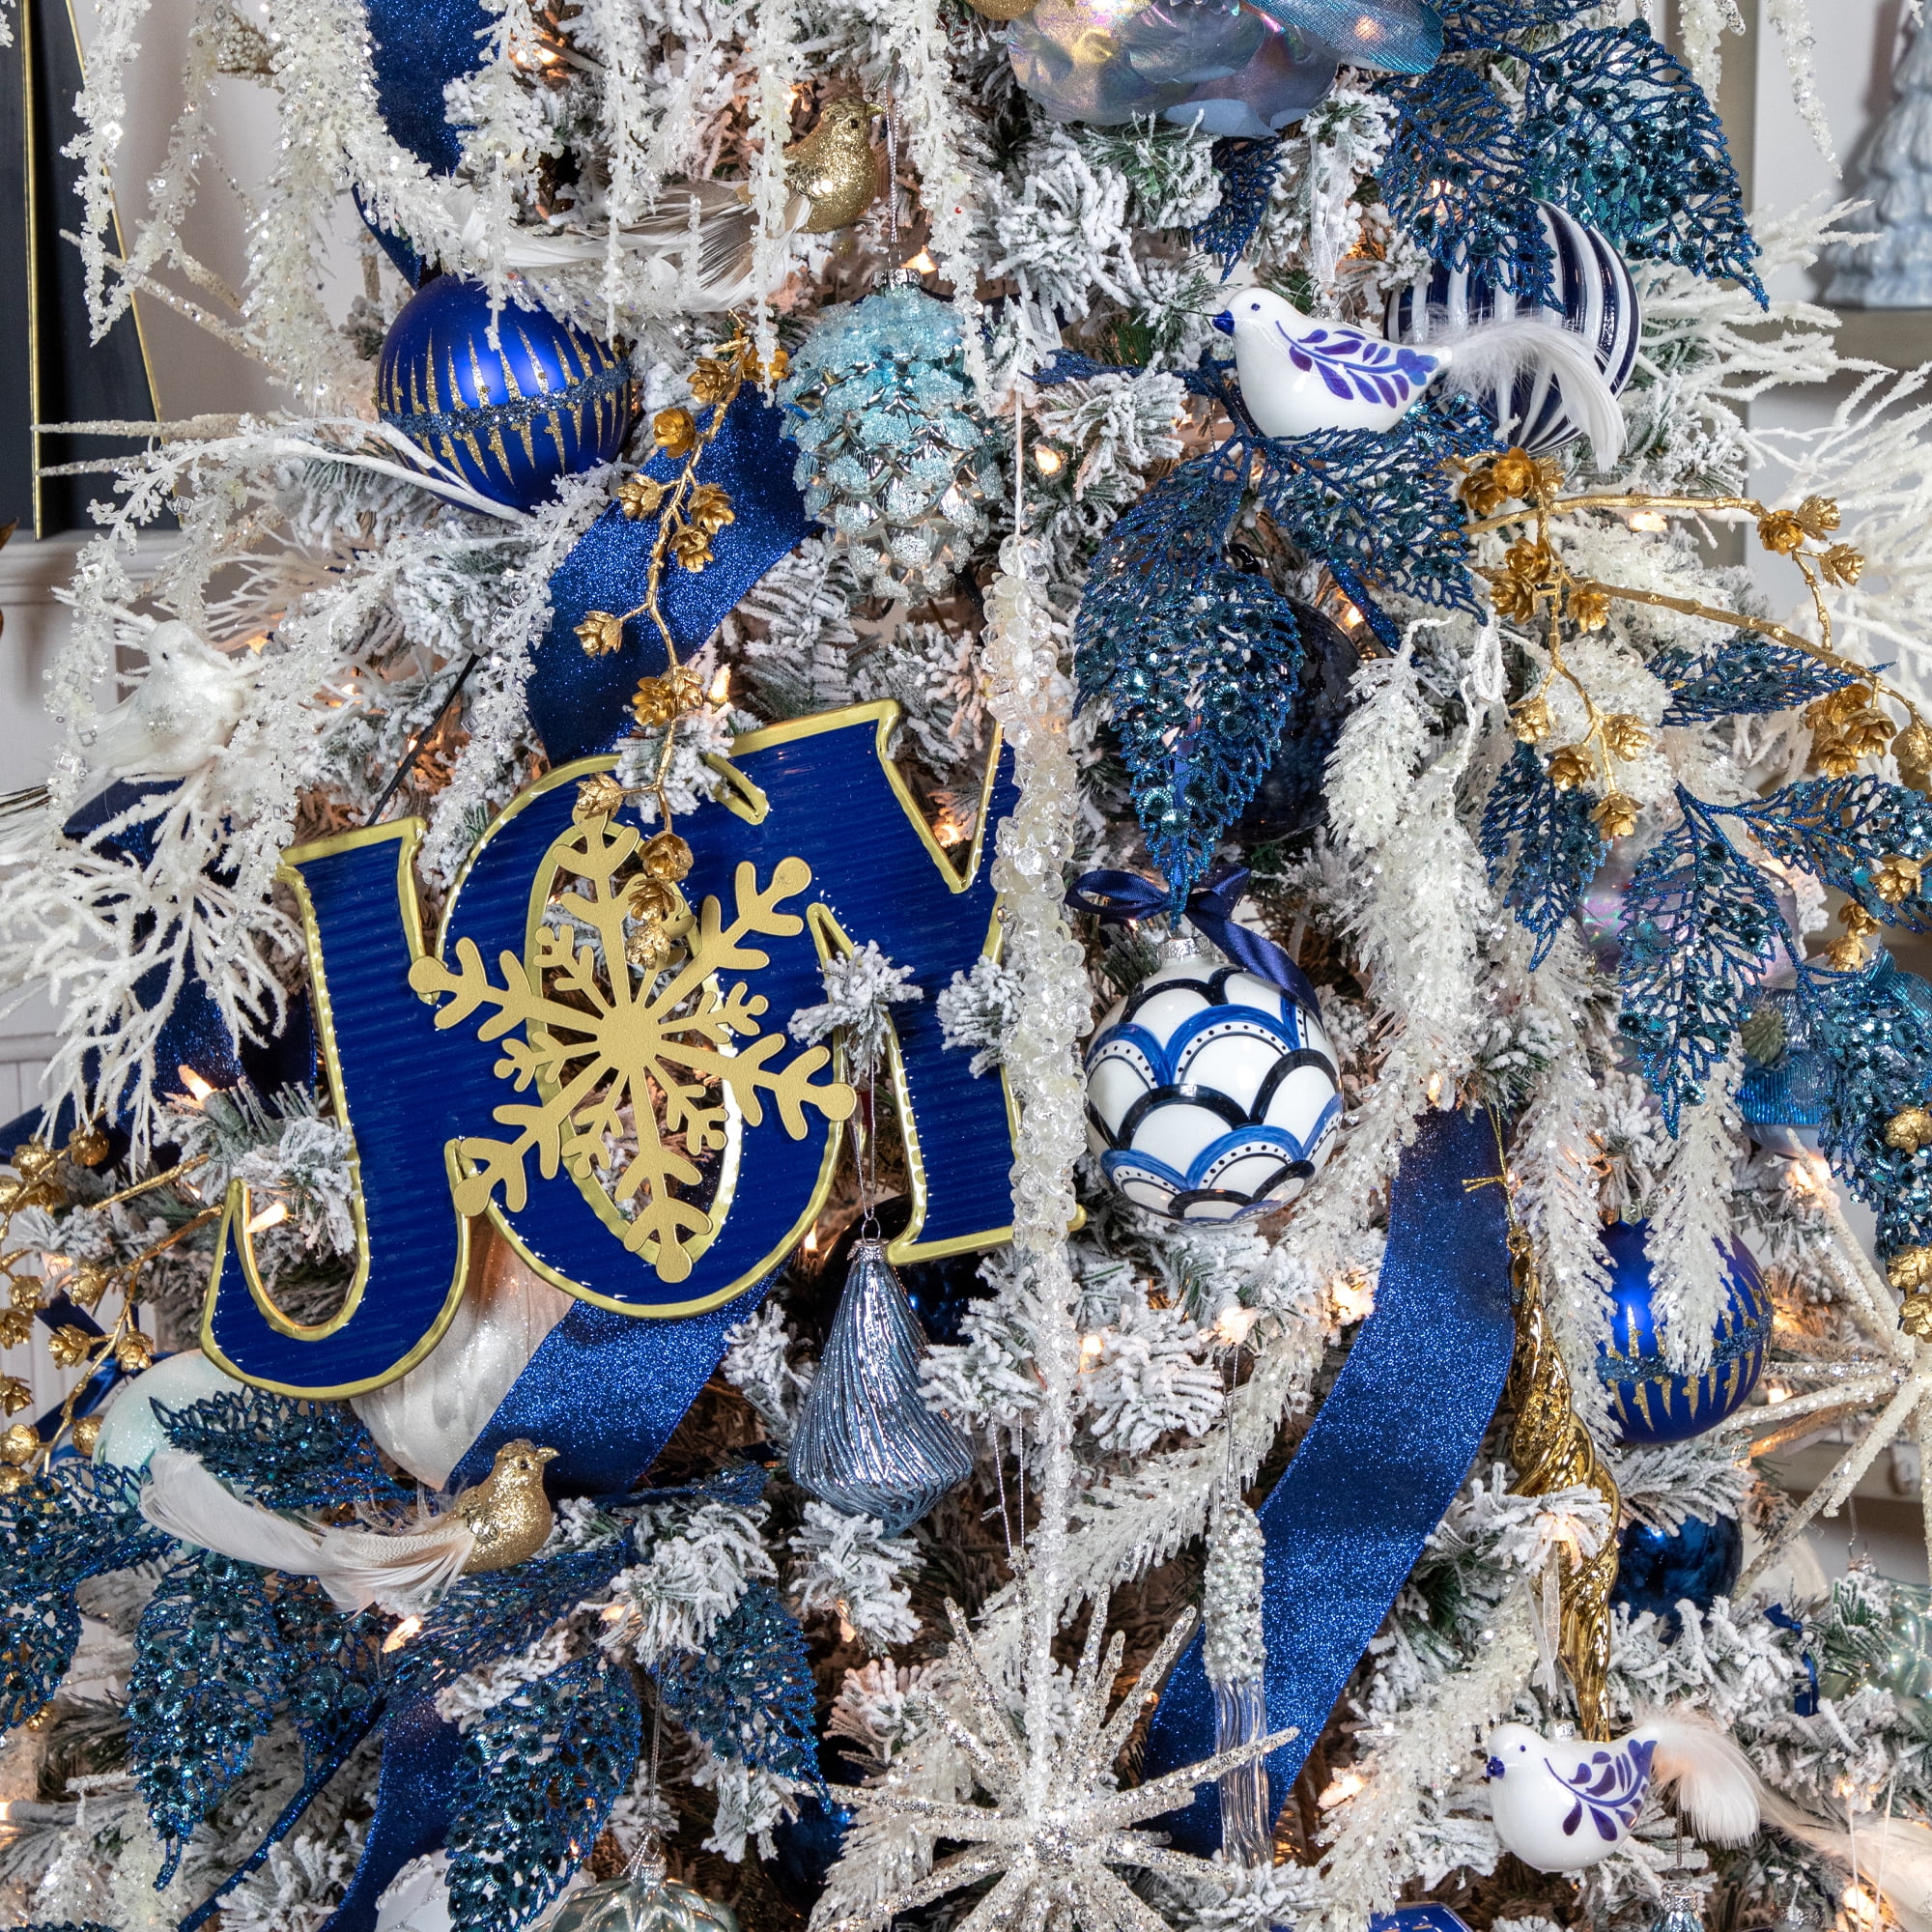 Icy Blue Pinecone Ornaments - Maison de Pax